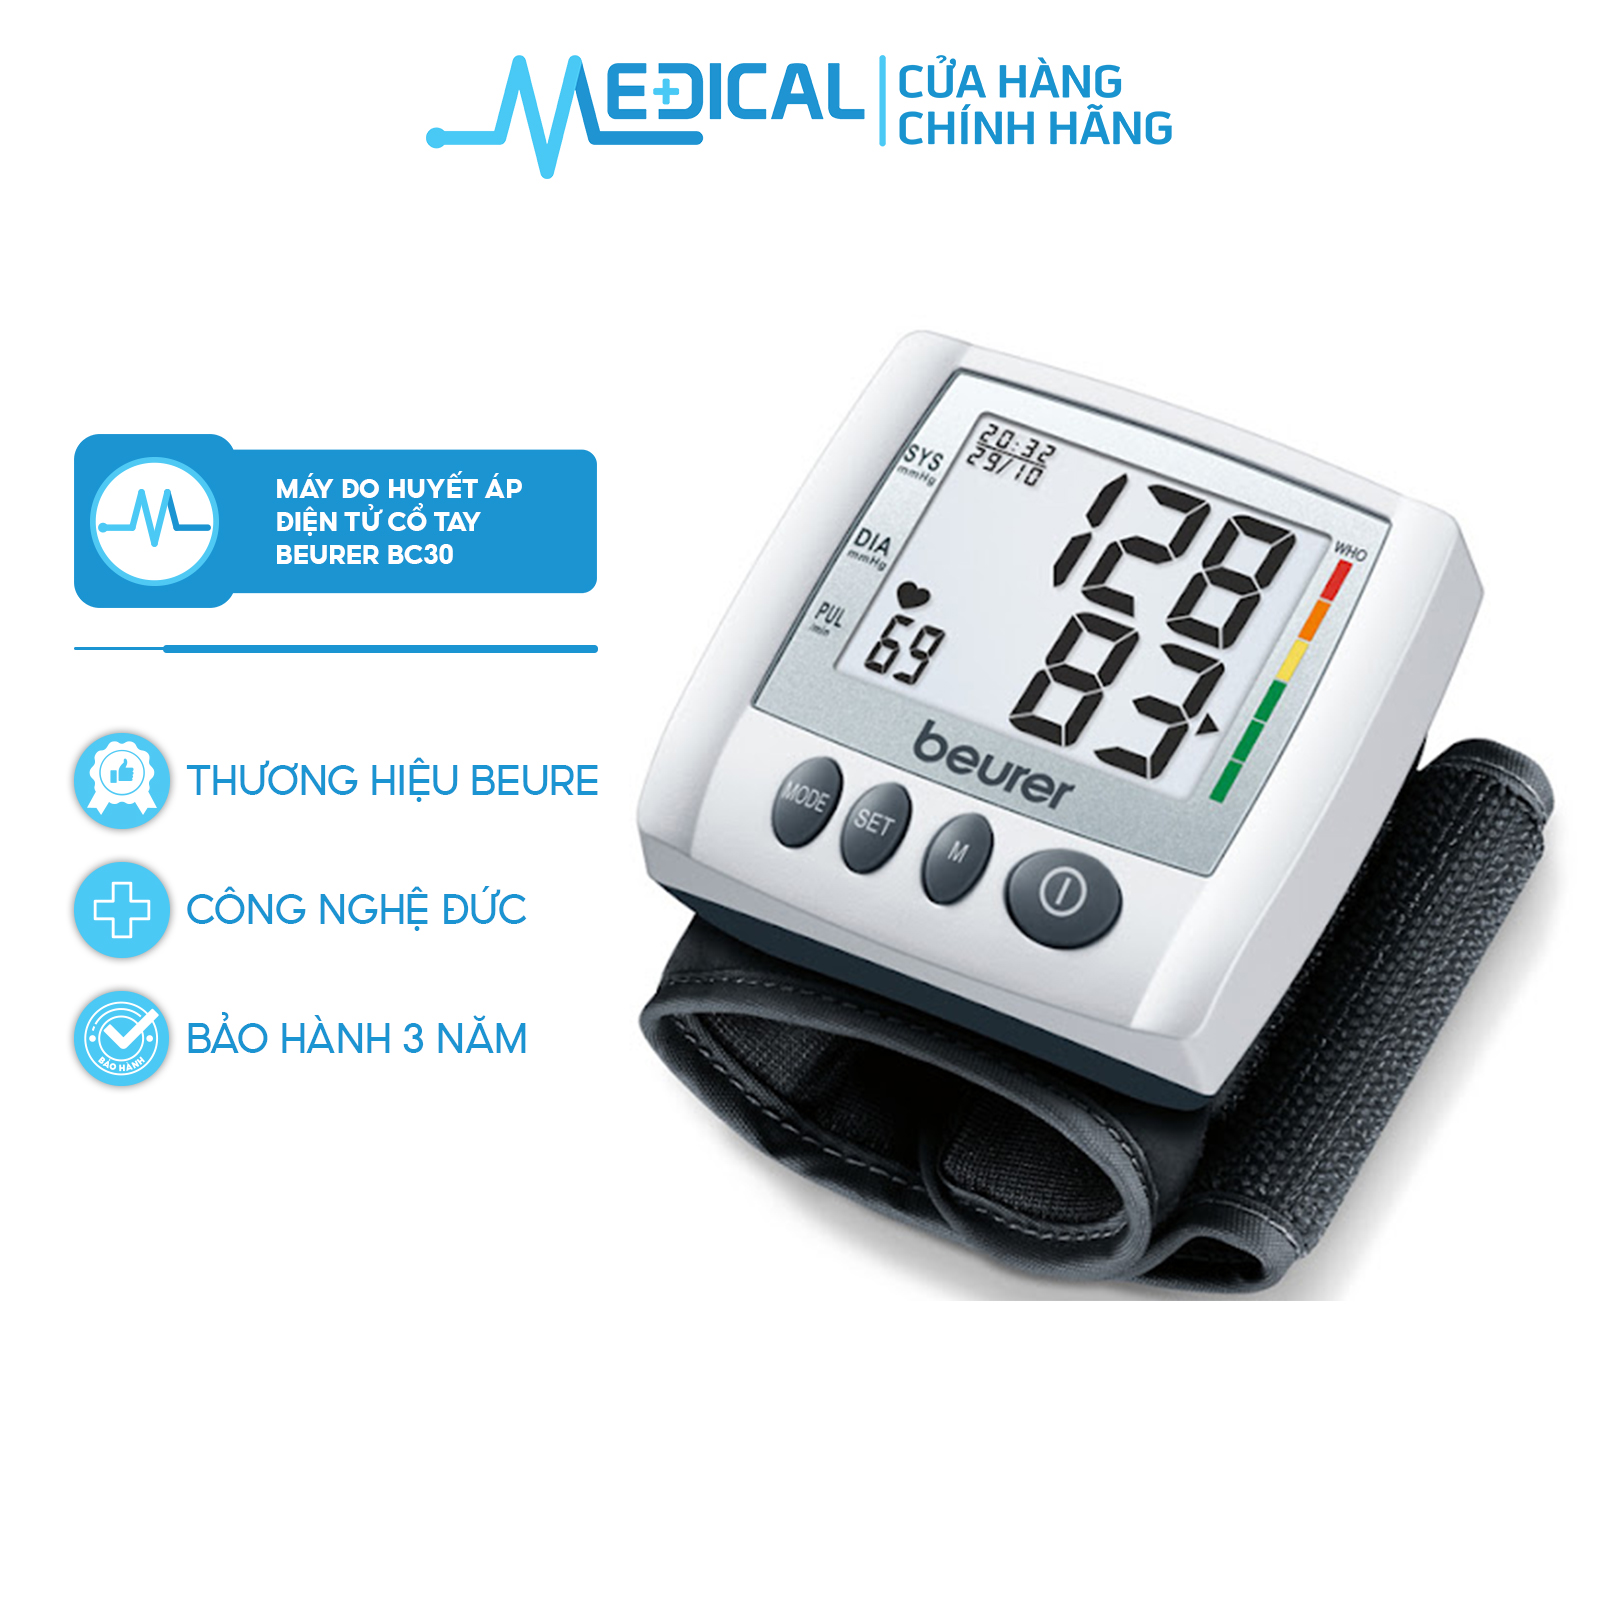 Máy đo huyết áp điện tử cổ tayBEURER BC30 bảo hành 3 năm chính hãng